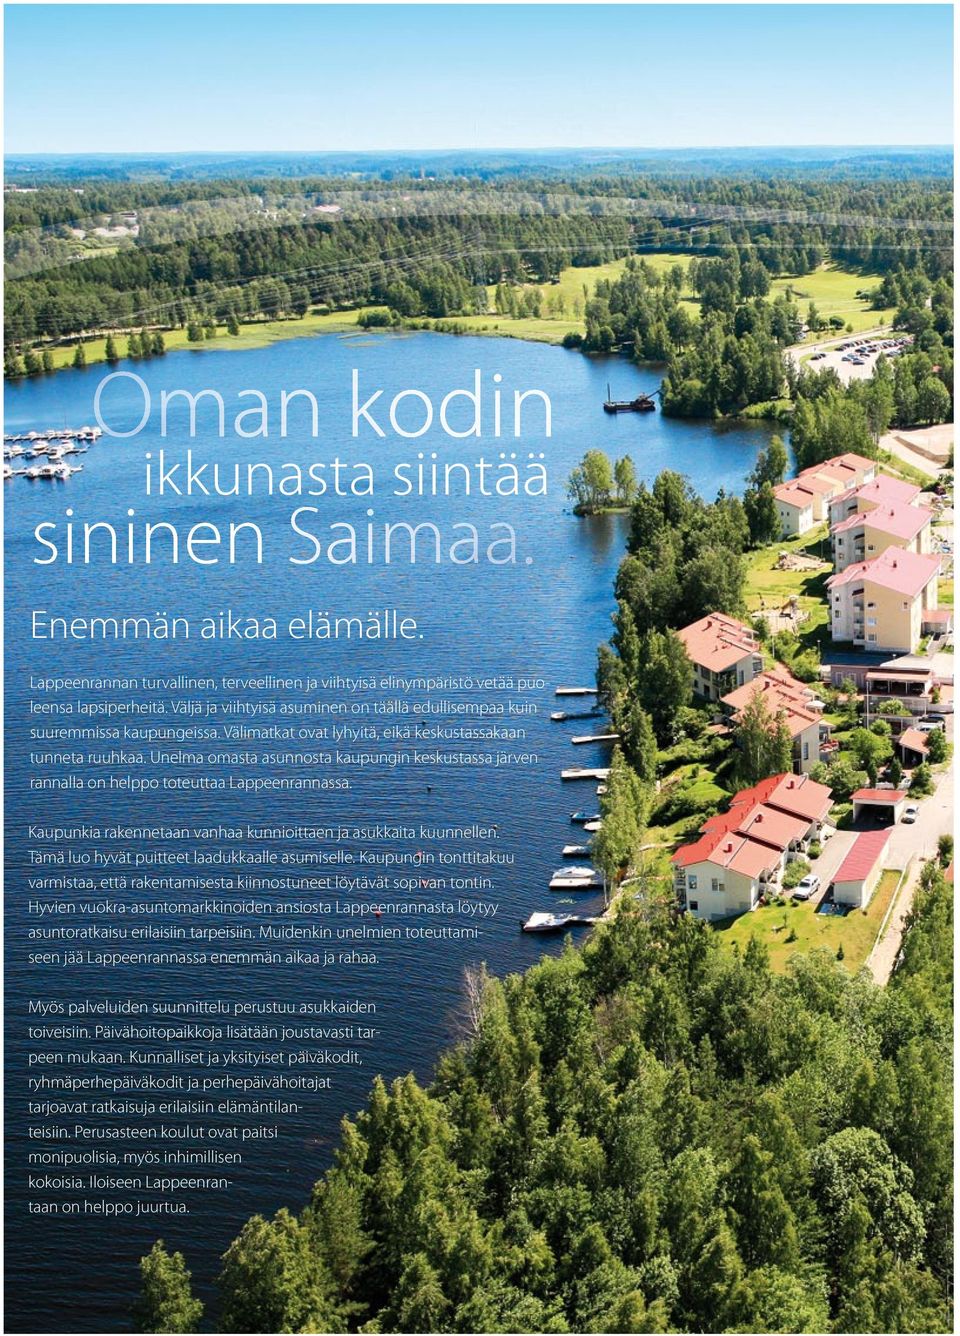 Unelma omasta asunnosta kaupungin keskustassa järven rannalla on helppo toteuttaa Lappeenrannassa. Kaupunkia rakennetaan vanhaa kunnioittaen ja asukkaita kuunnellen.